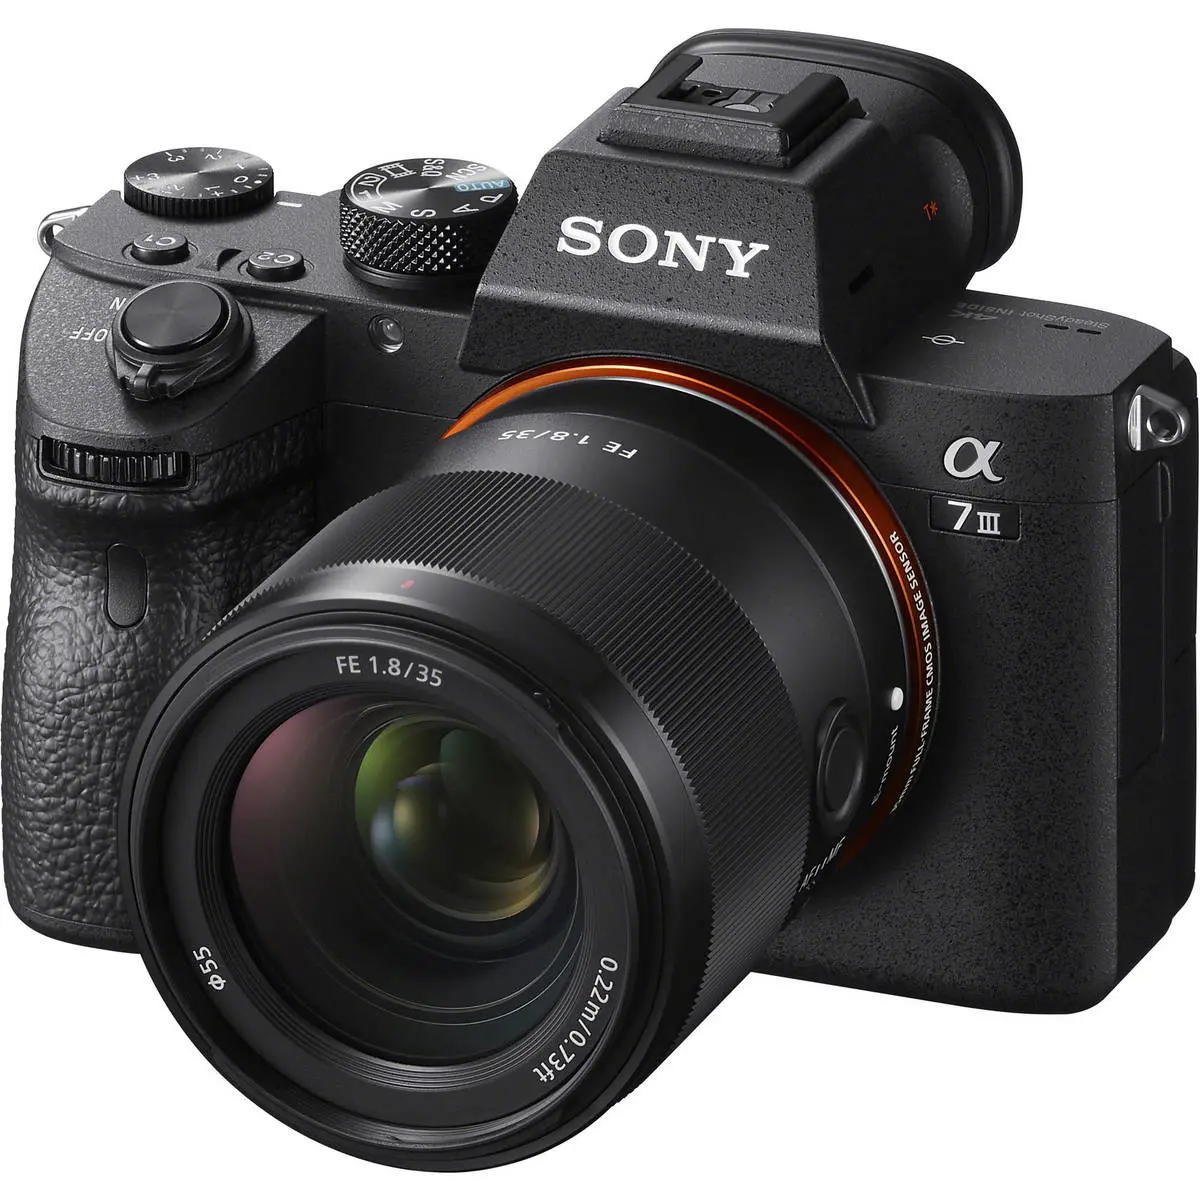 2. Sony FE 35mm F1.8 (Full Frame) Lens